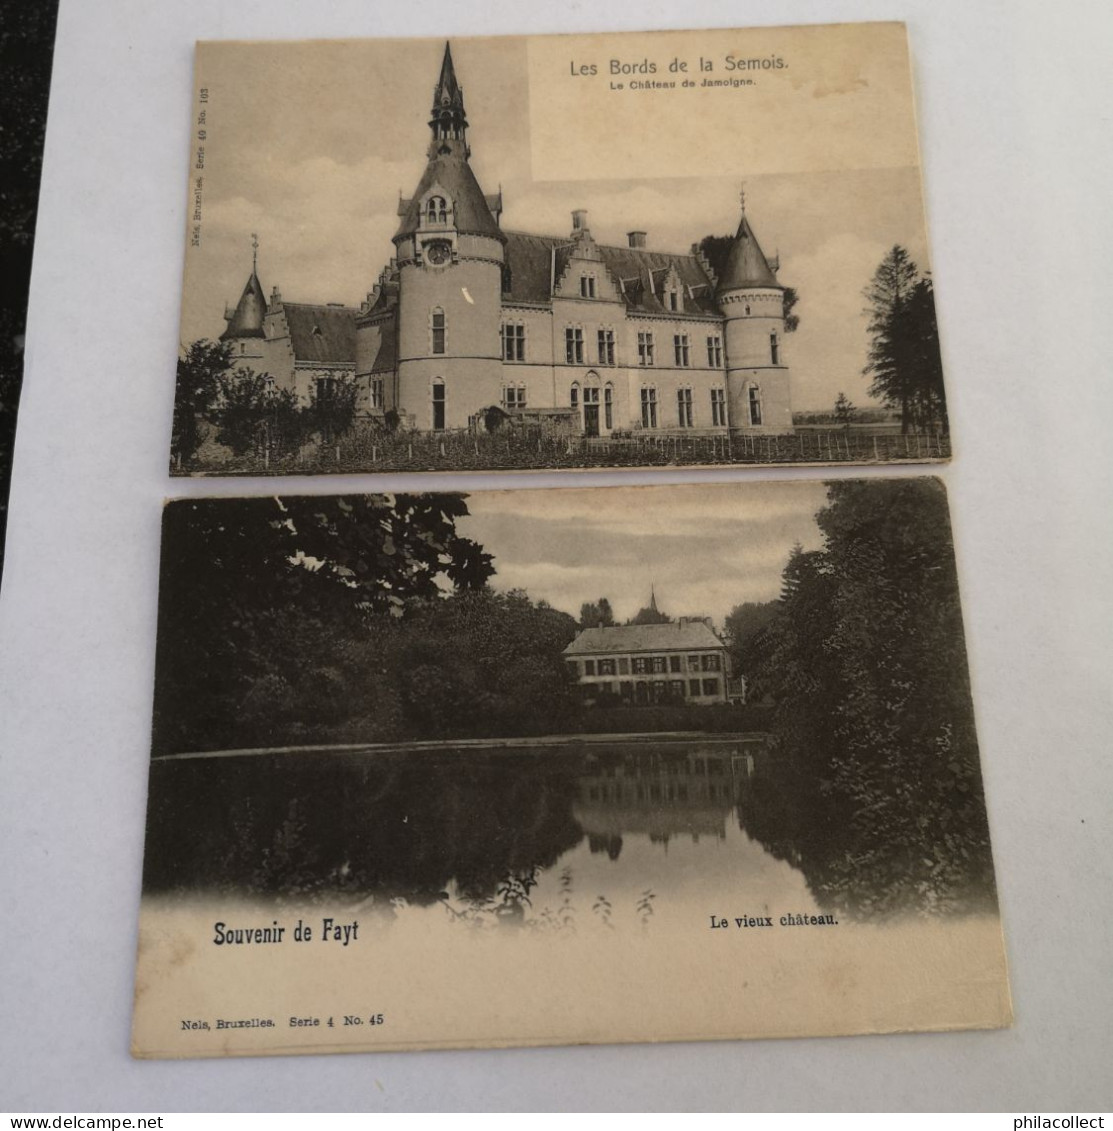 Collectie Belgie - Belgique 34 x Chateau - Kasteel ca 1900